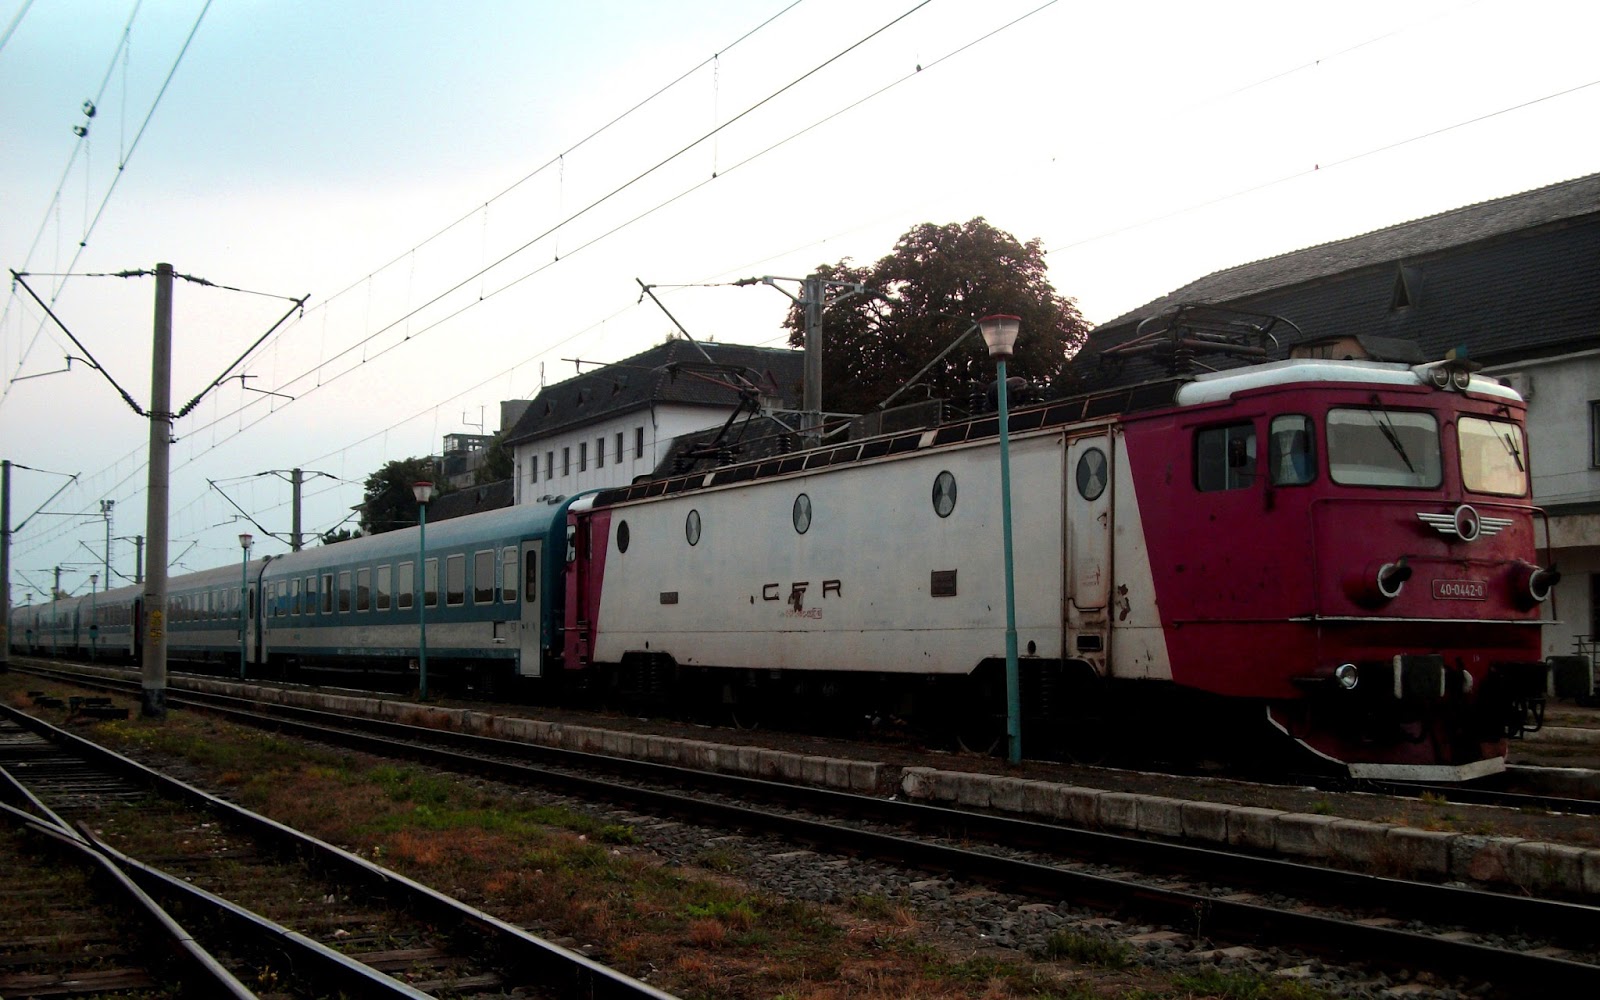 A Corona és a Hargita vonatok bővítését kérik a székelyföldiek - A támogató aláírásokat Tusványoson adták át a magyar kormány felelős miniszterének